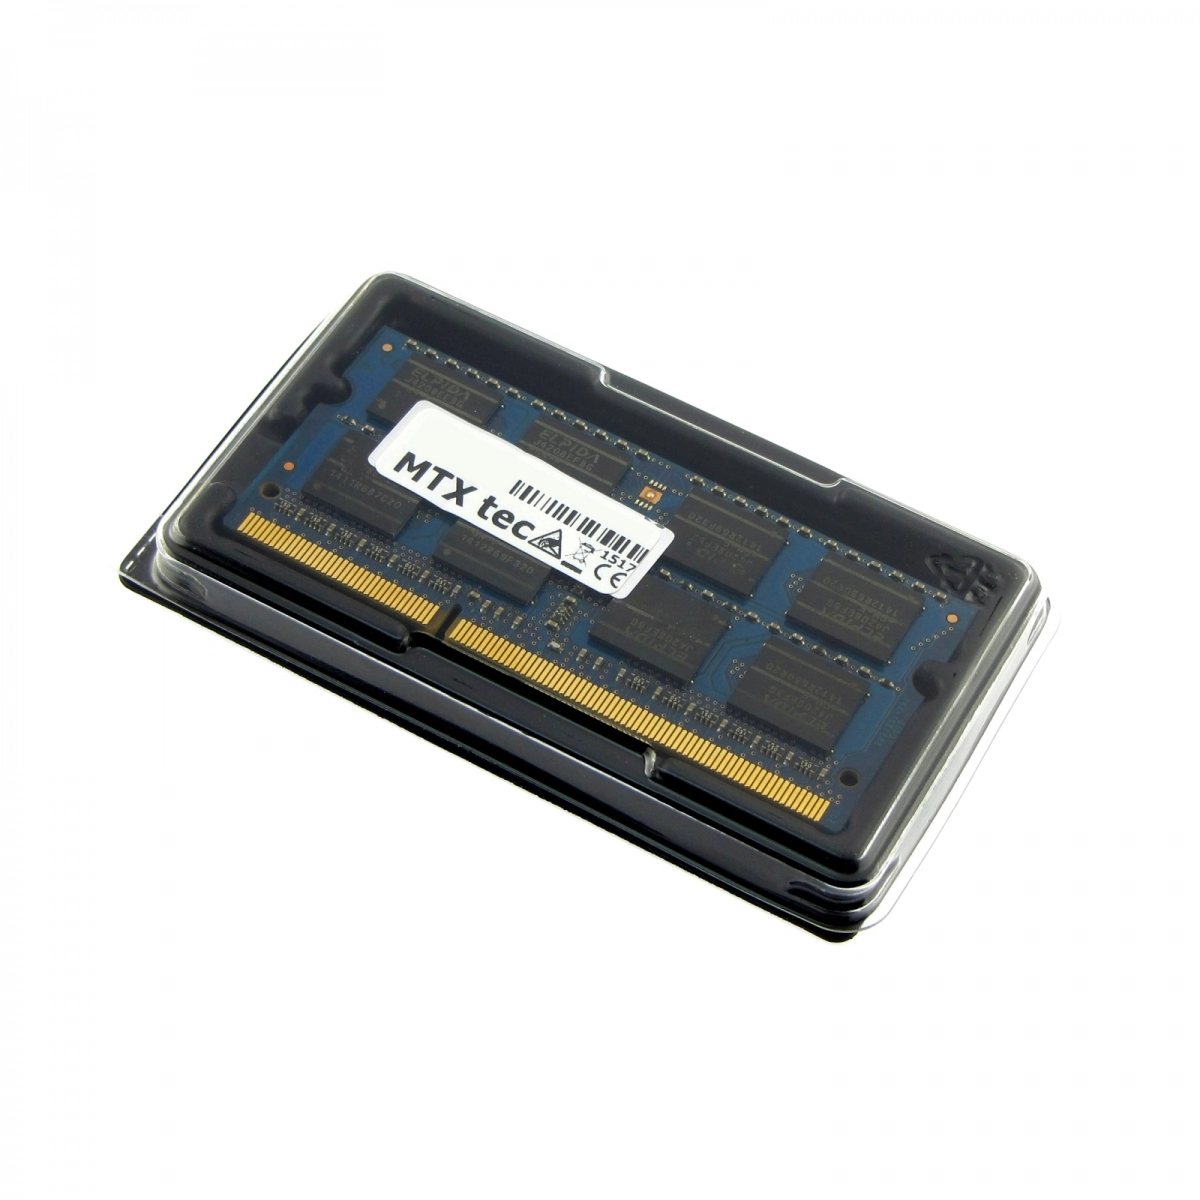 MTXtec Arbeitsspeicher 4 GB RAM für TERRA Mobile 1512